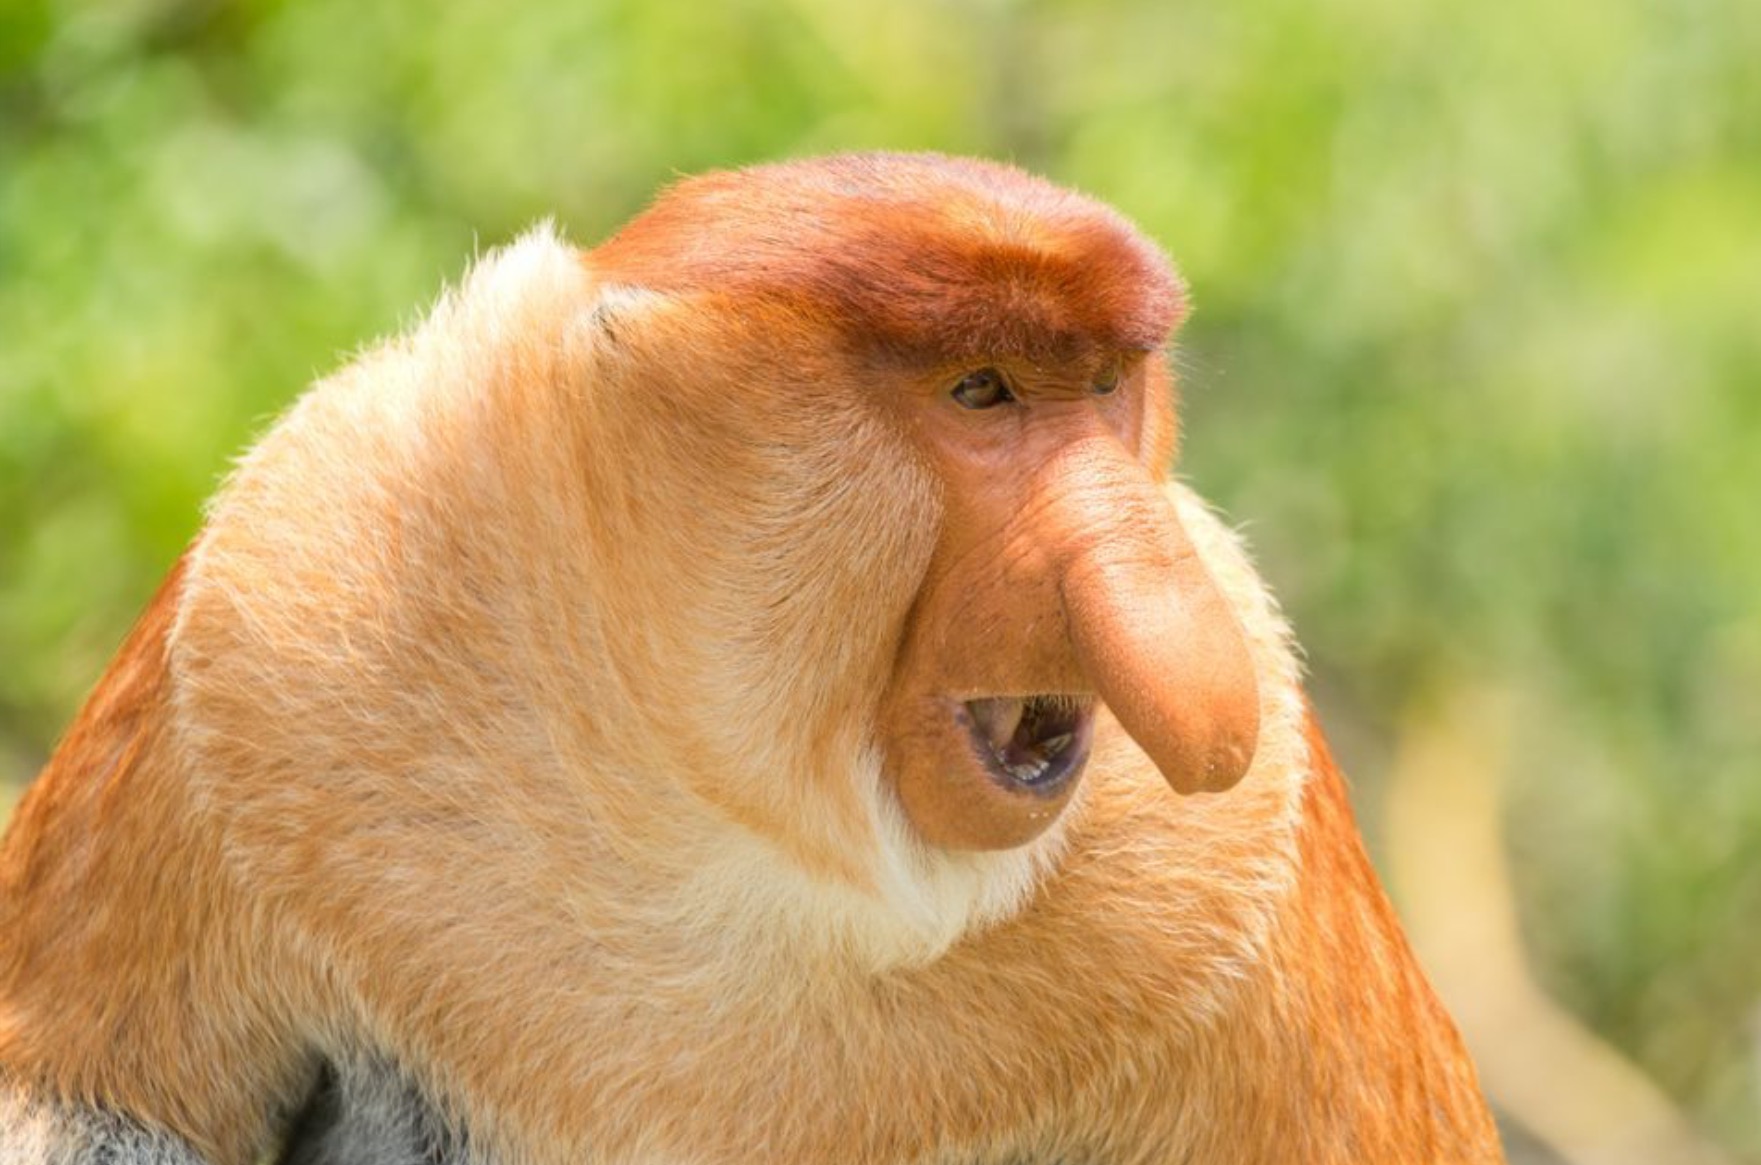 No "Proboscis monkey" memes have been featured yet. 